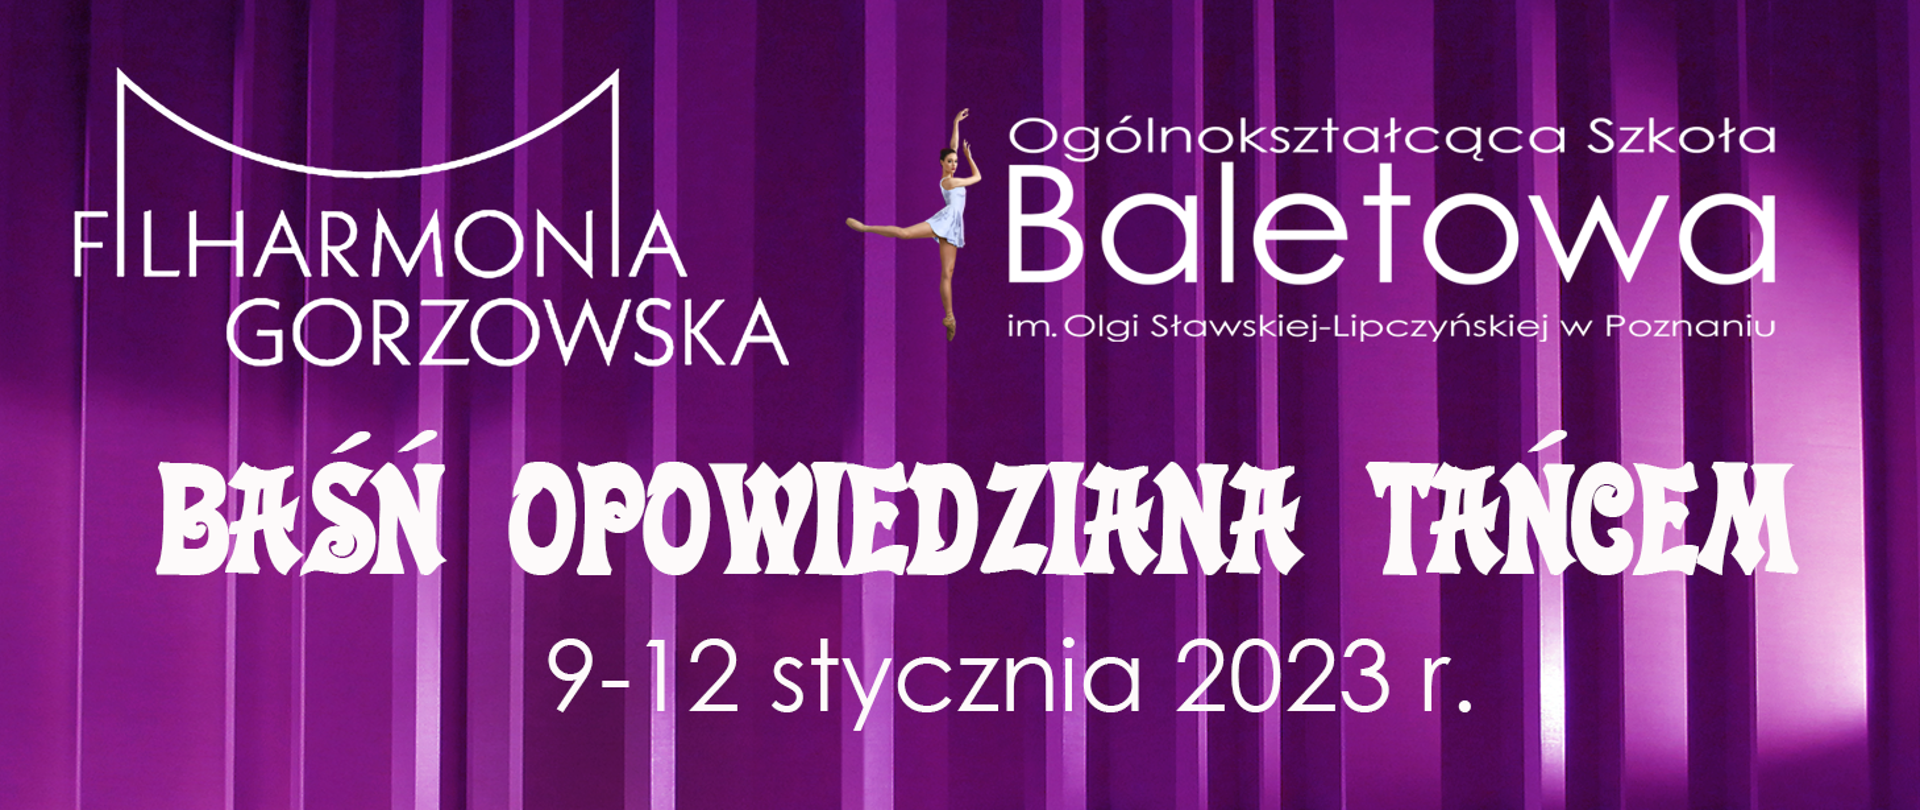 Na fioletowym tle u góry z lewej strony napis filharmonia gorzowska, po prawej logo Ogólnokształcącej Szkoły Baletowej w Poznaniu, poniżej centralnie tekst "BAŚŃ OPOWIEDZIANA TAŃCEM", poniżej " 9-12 stycznia 2023r"